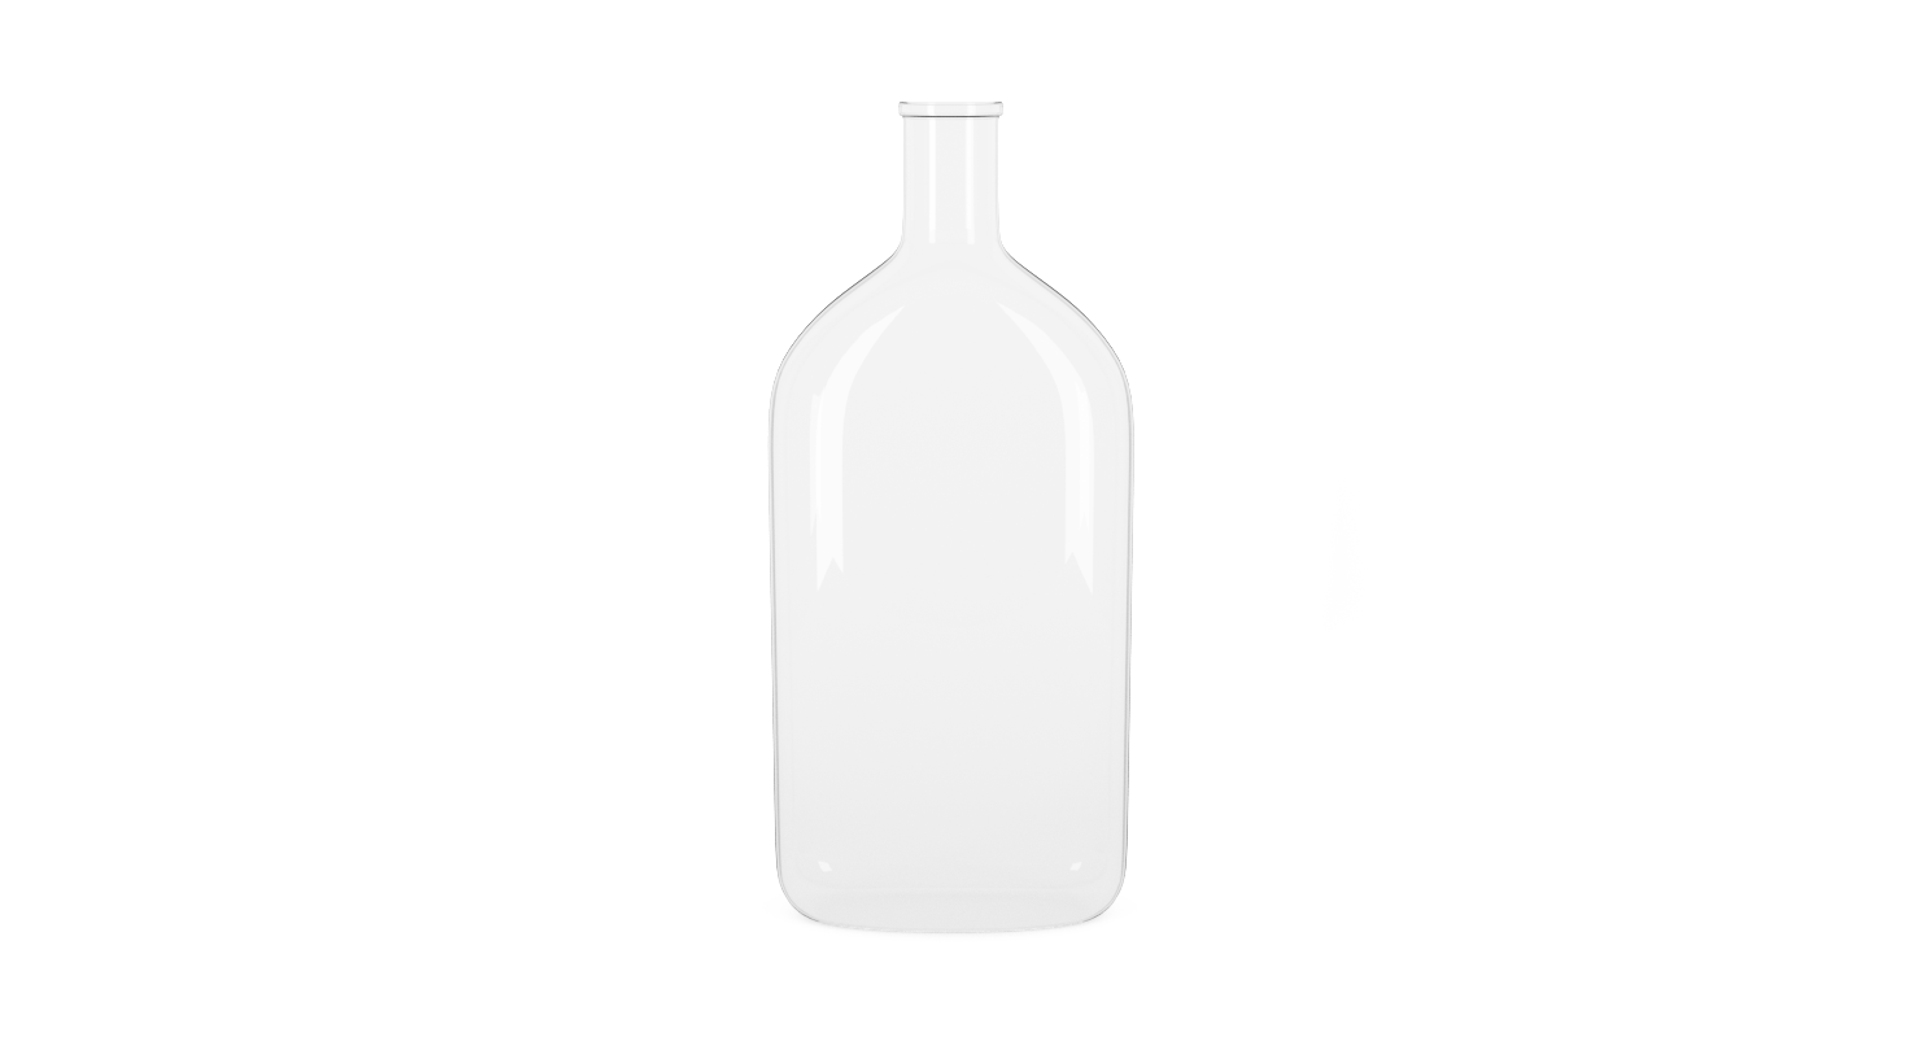 Bottle blender 3D model - TurboSquid 1416898